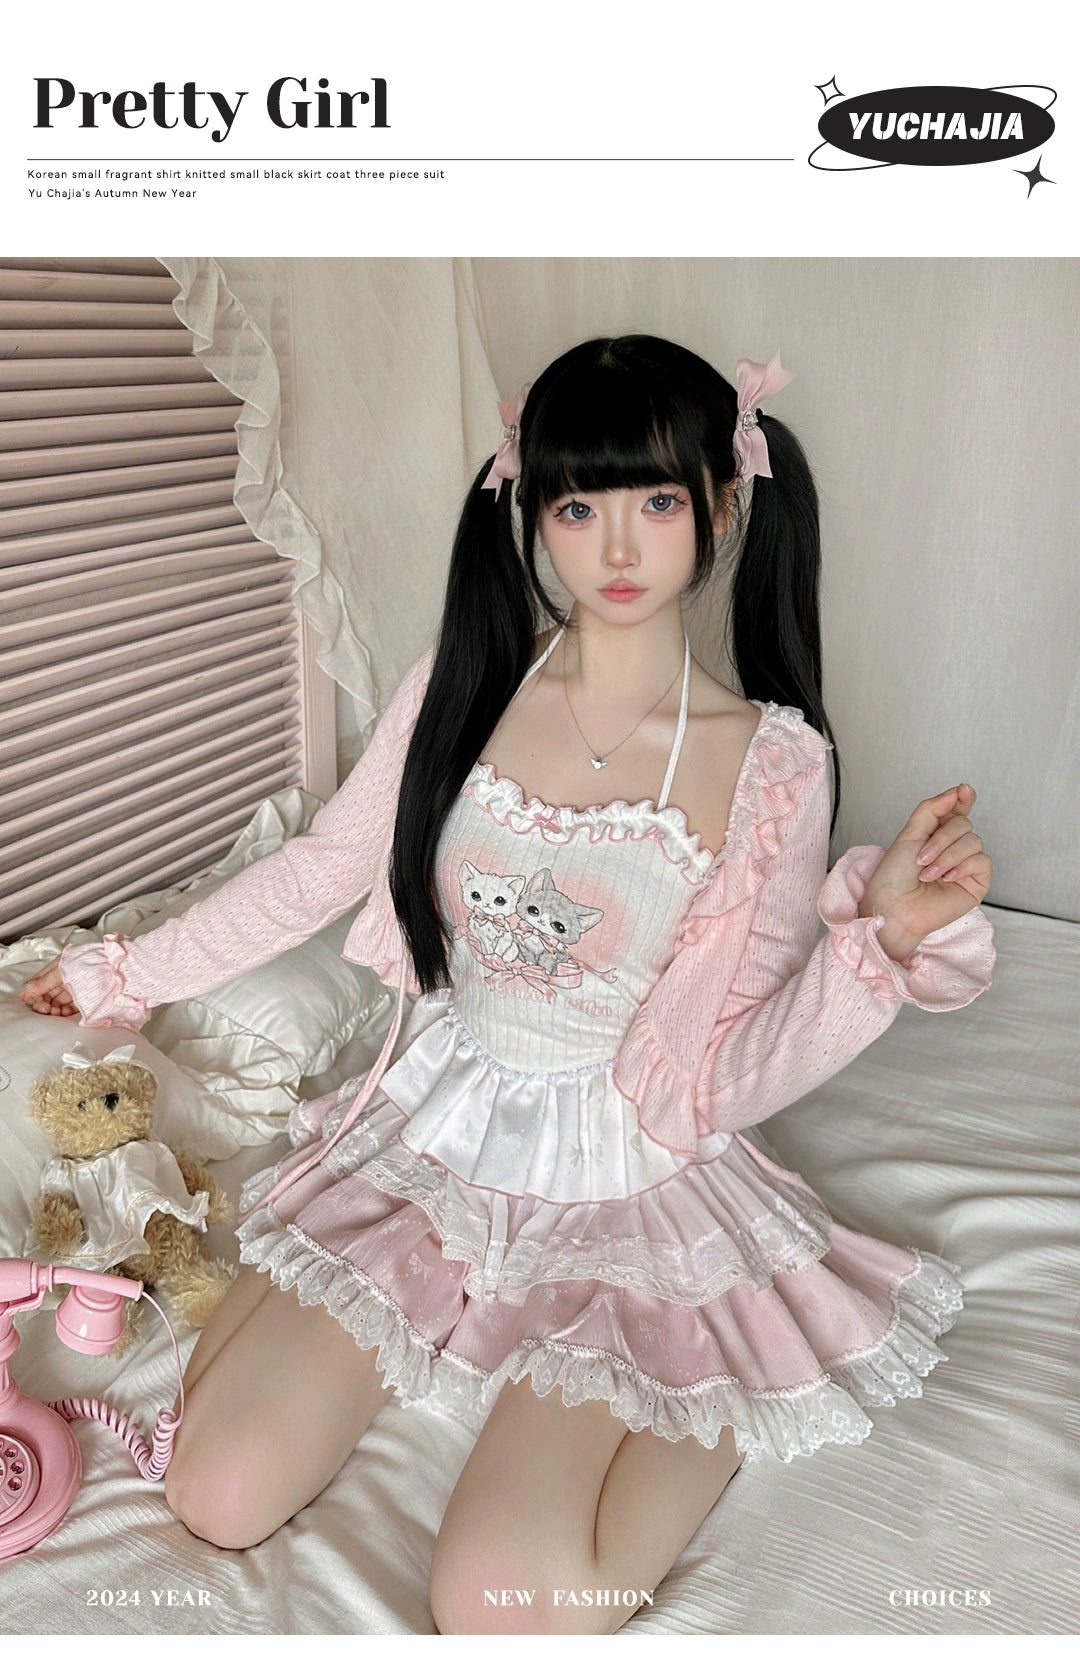 Ryousangata Skirt Set Pink Cardigan White Straps Top 37008:548366